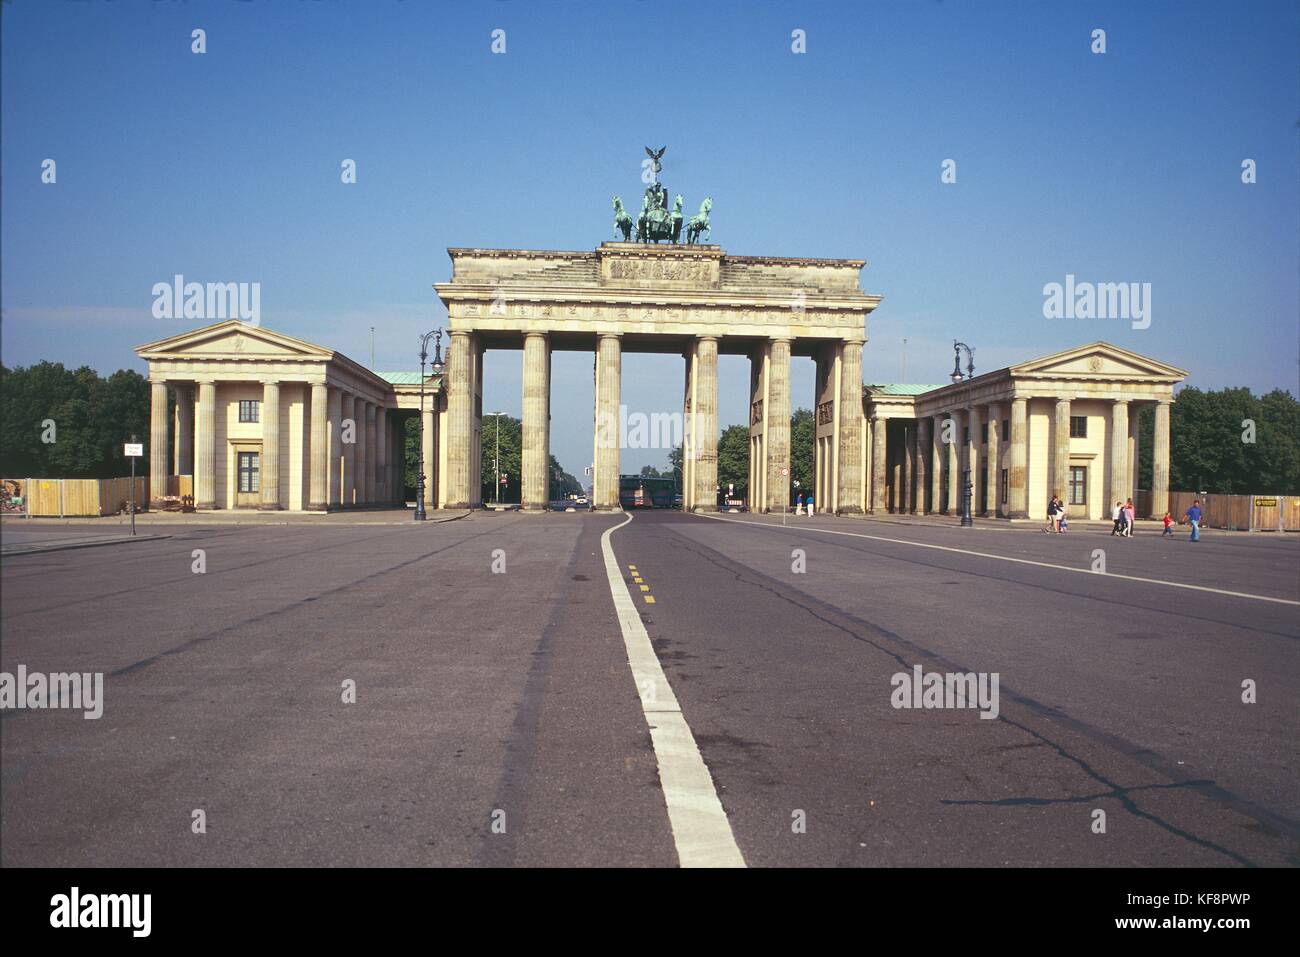 Deutschland, XX. Jahrhundert, Berlin. Das Brandenburger Tor (Brandenburger Tor) Pariser Platz anzeigen Stockfoto